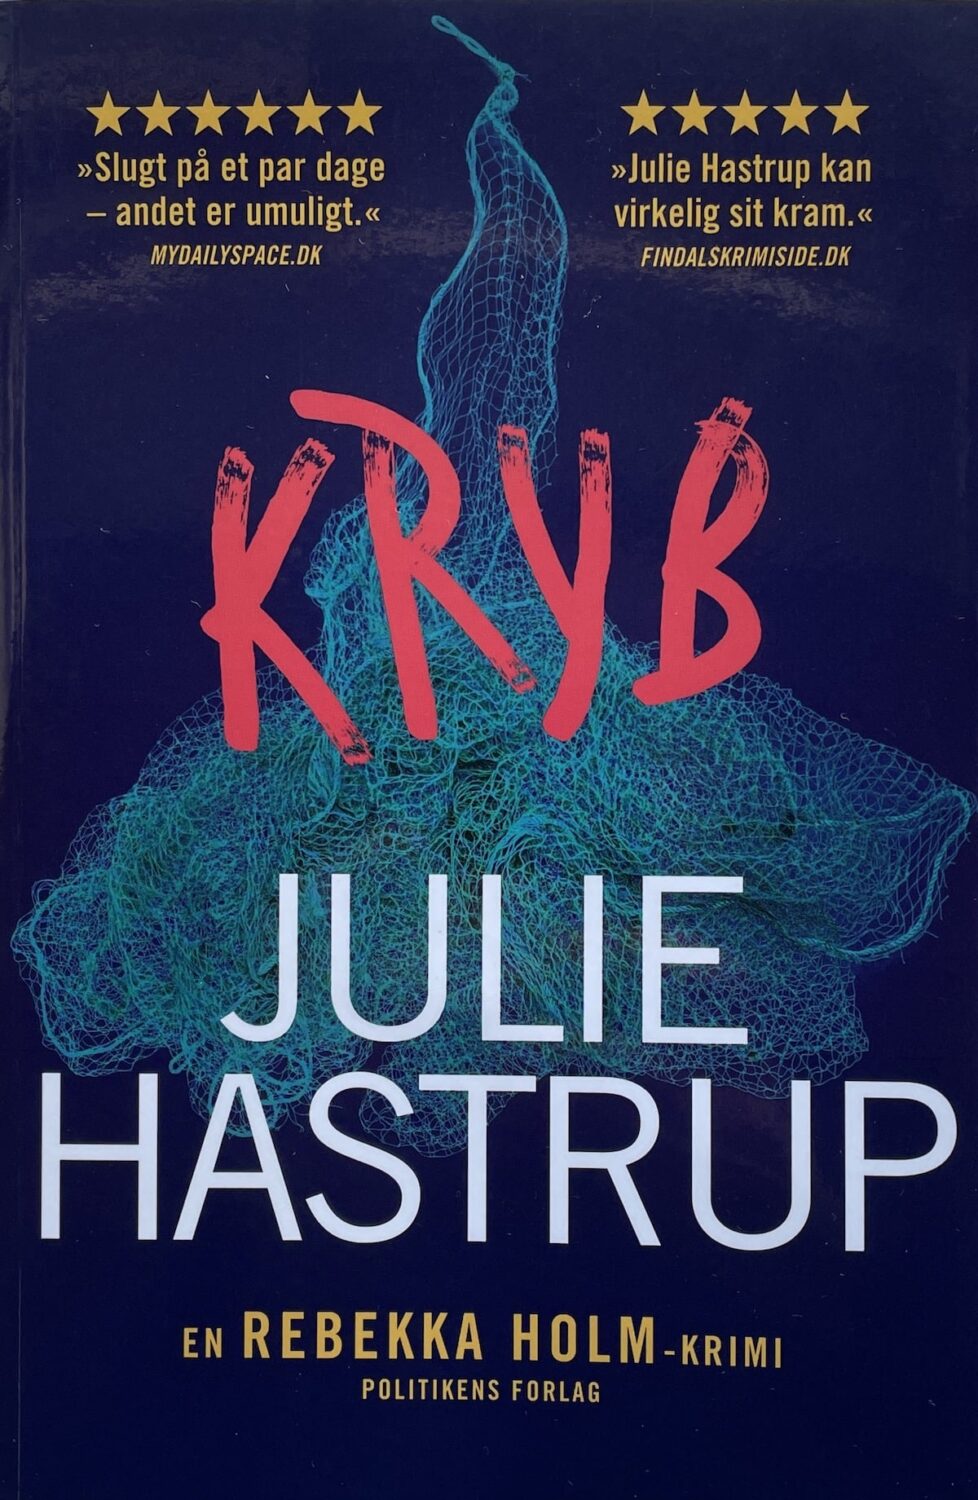 Kryb, Julie Hastrup, brugt bog